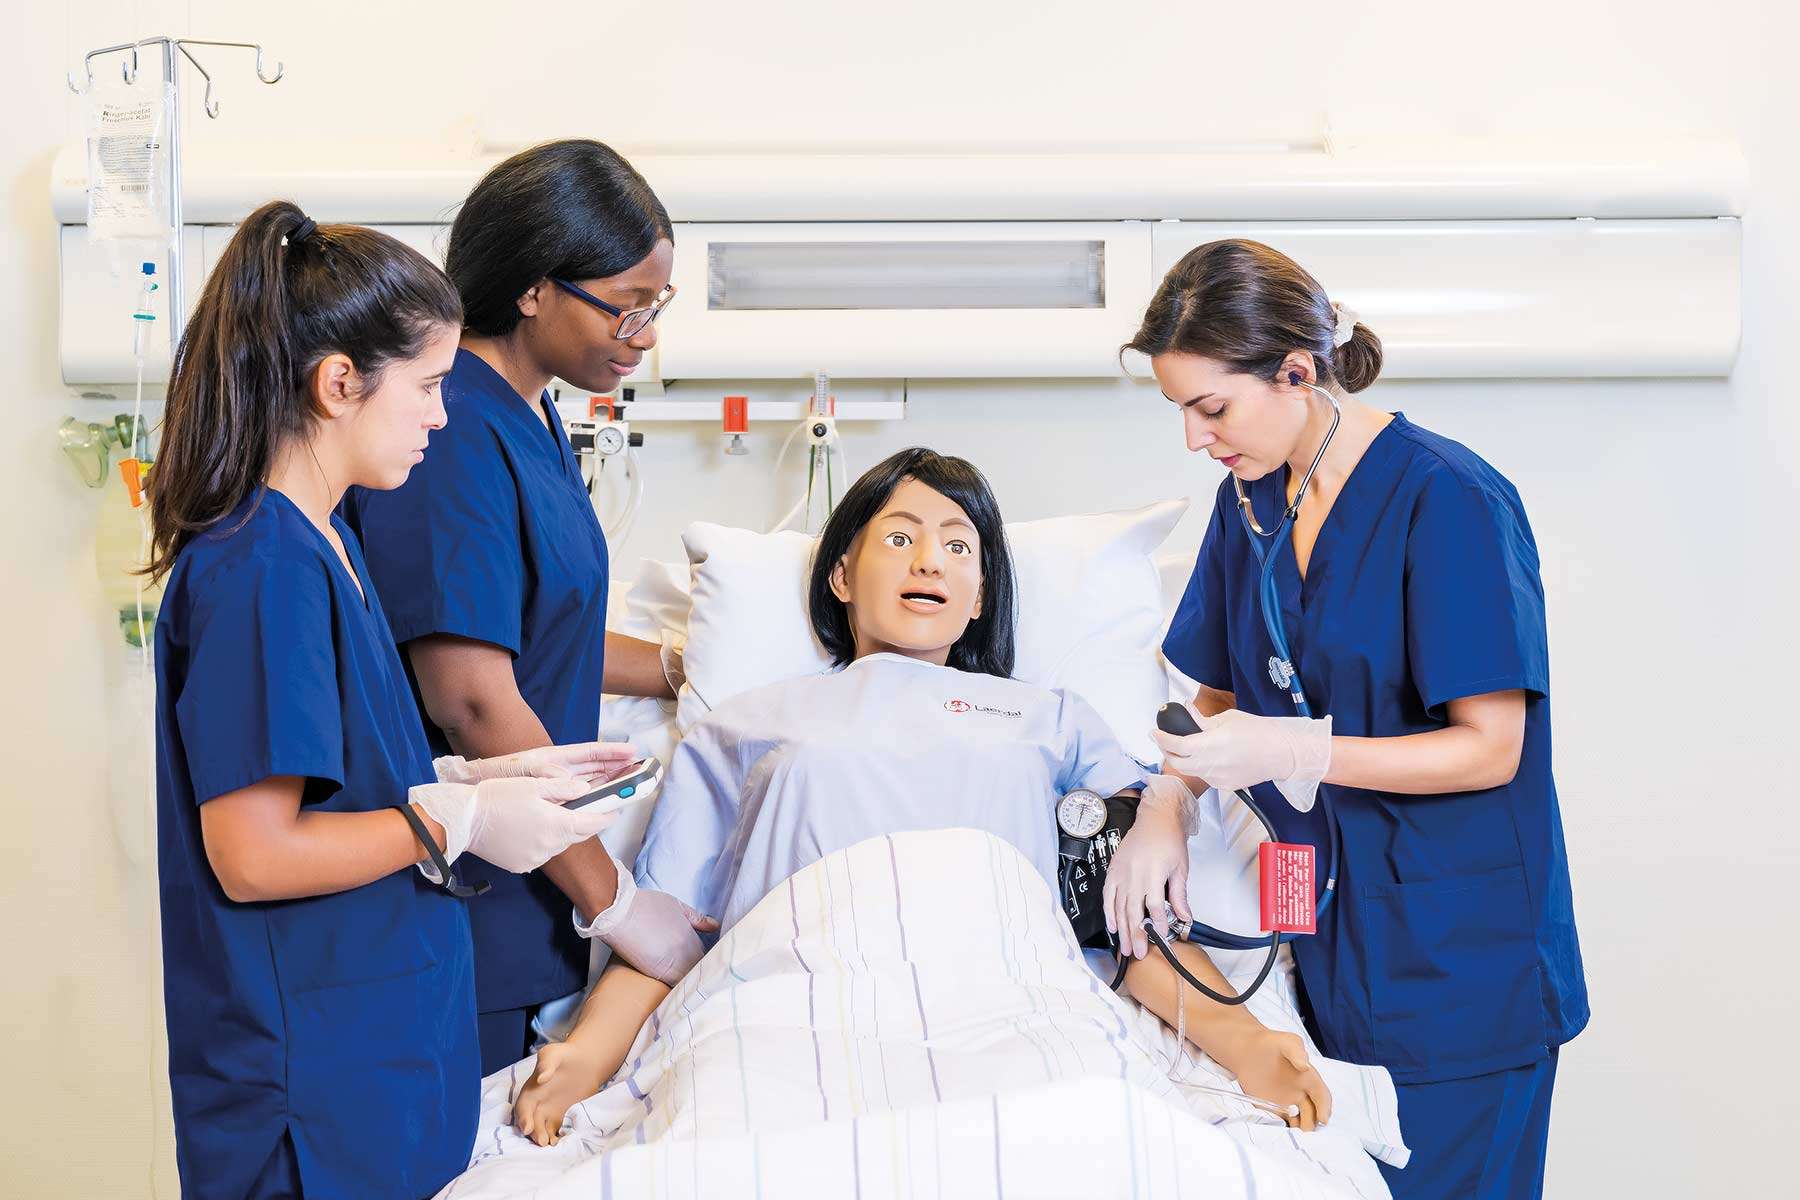 three nurses taking blood pressure on nursing anne simulator with simpad